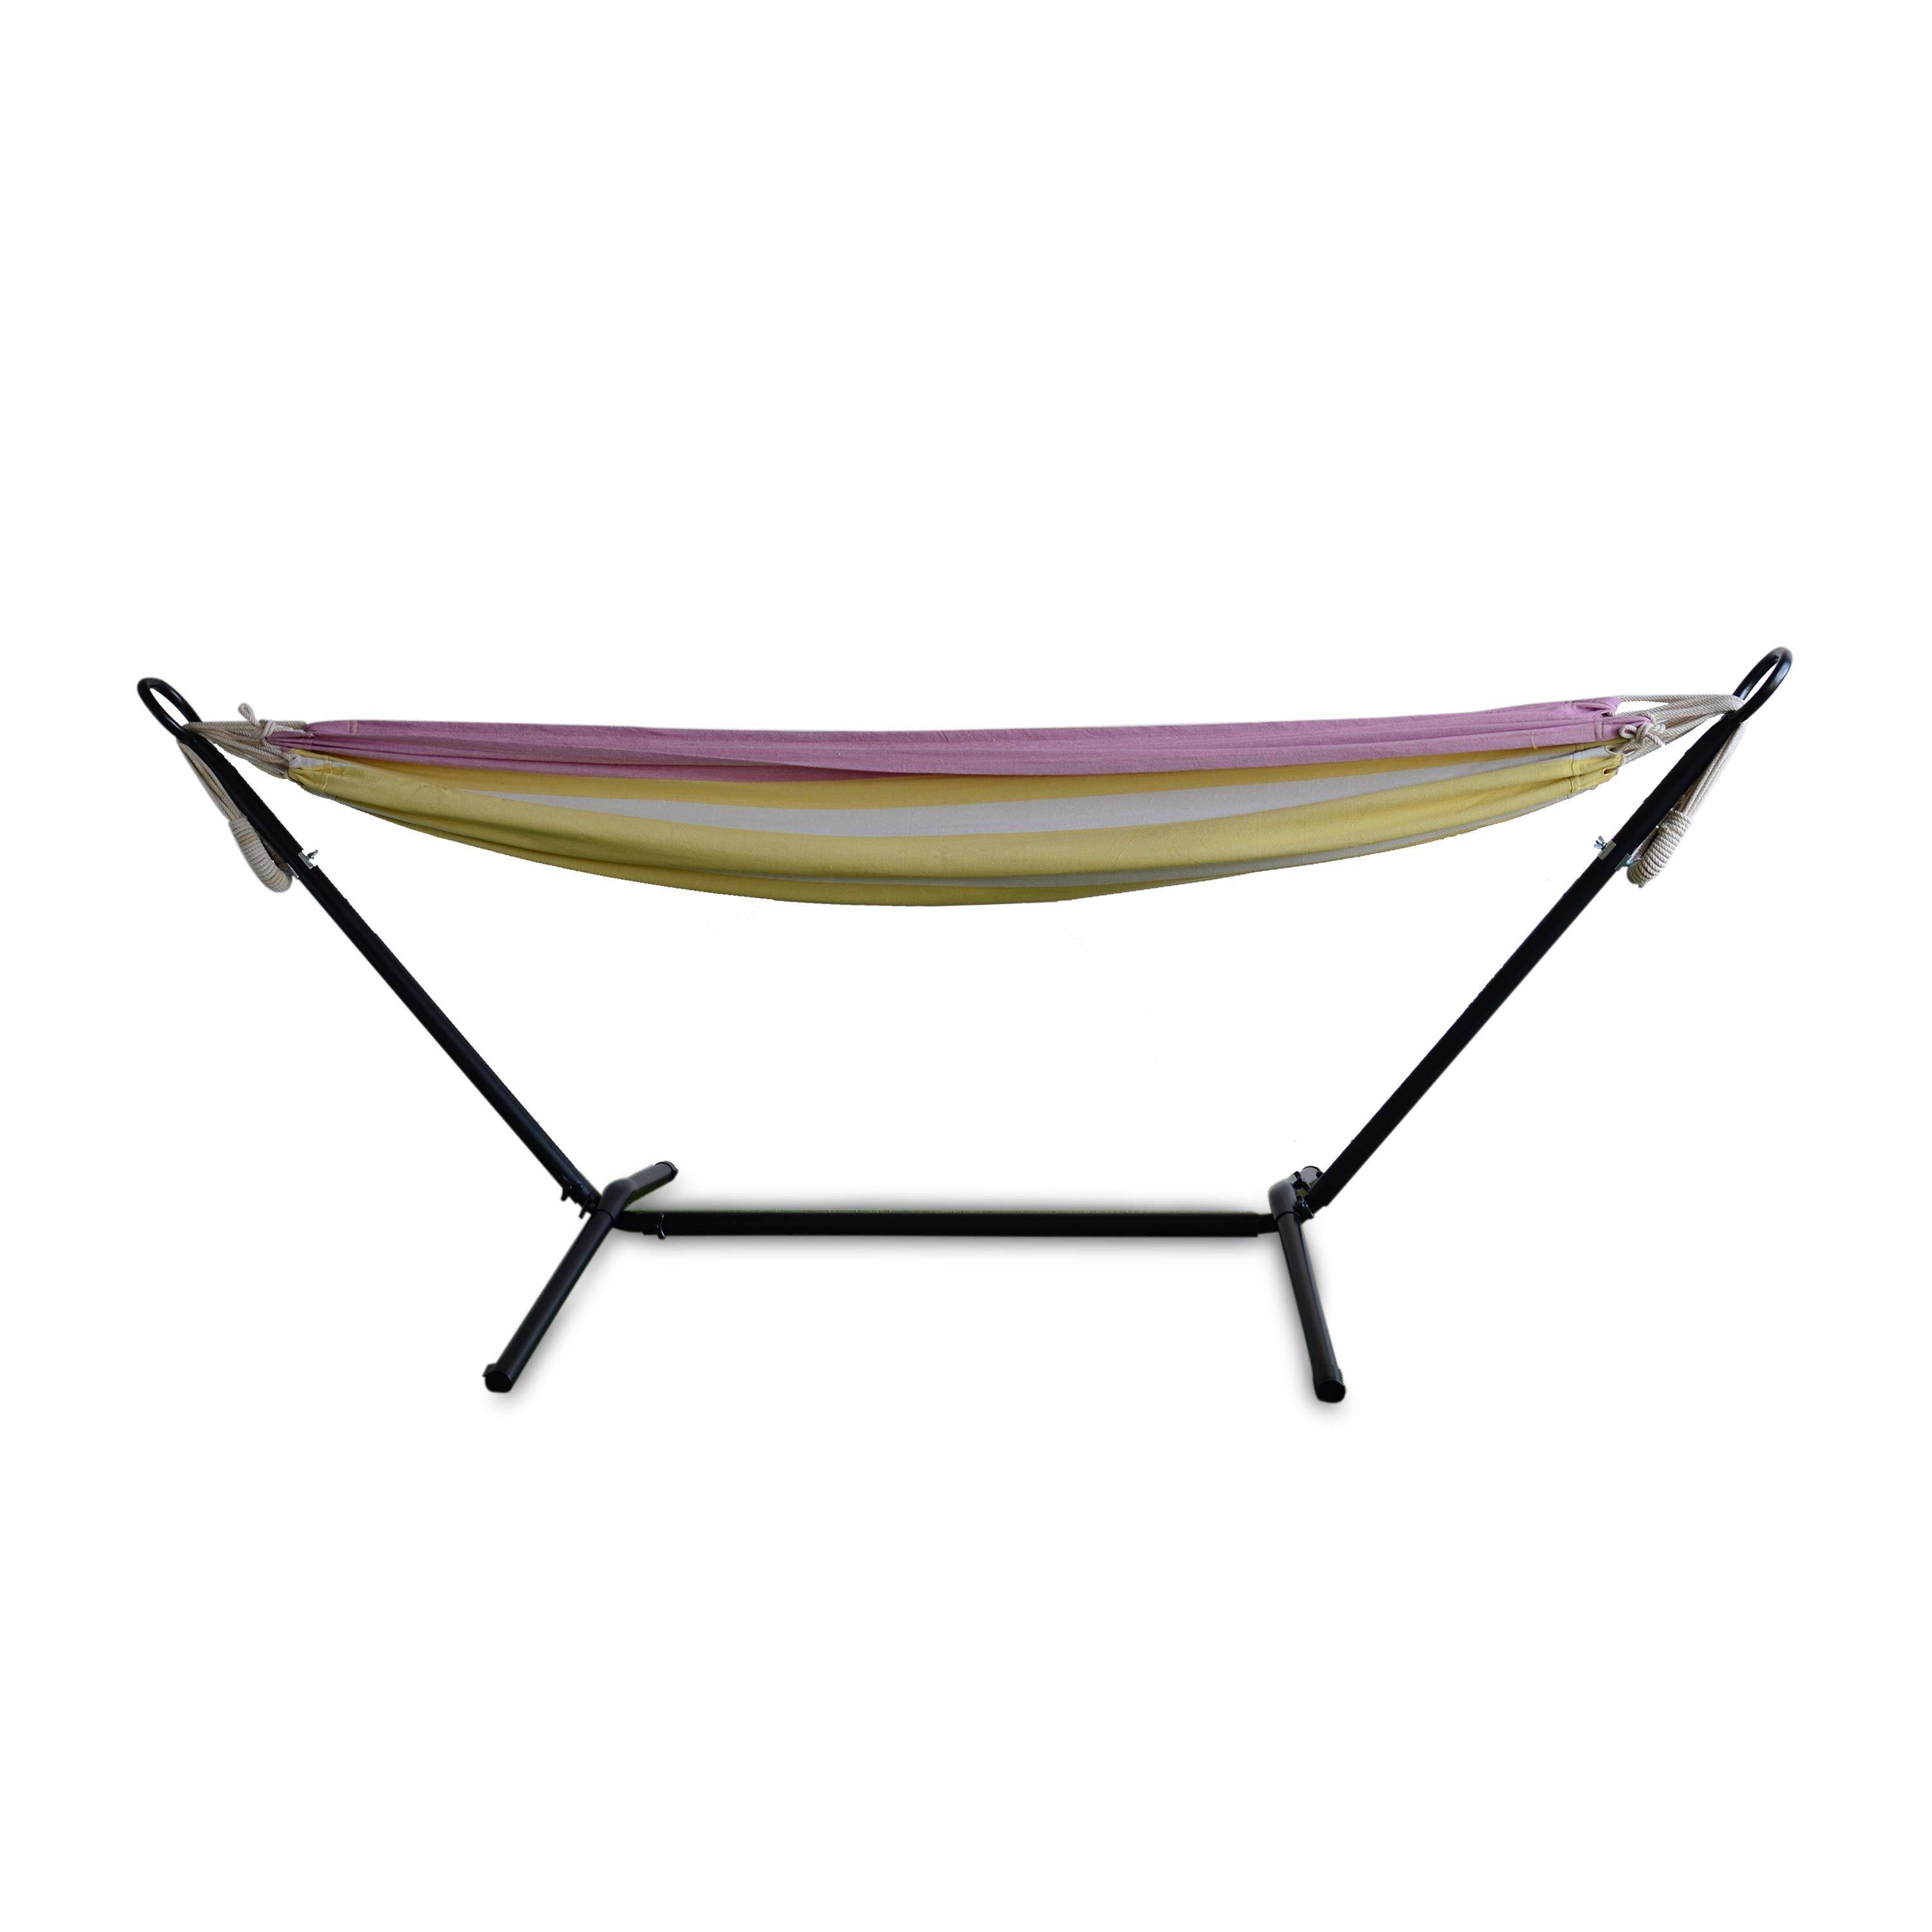 Hangmat voor 1 persoon, 110x220cm, met touwen en karabijnhaken, met standaard, geel en roze gestreept Photo1